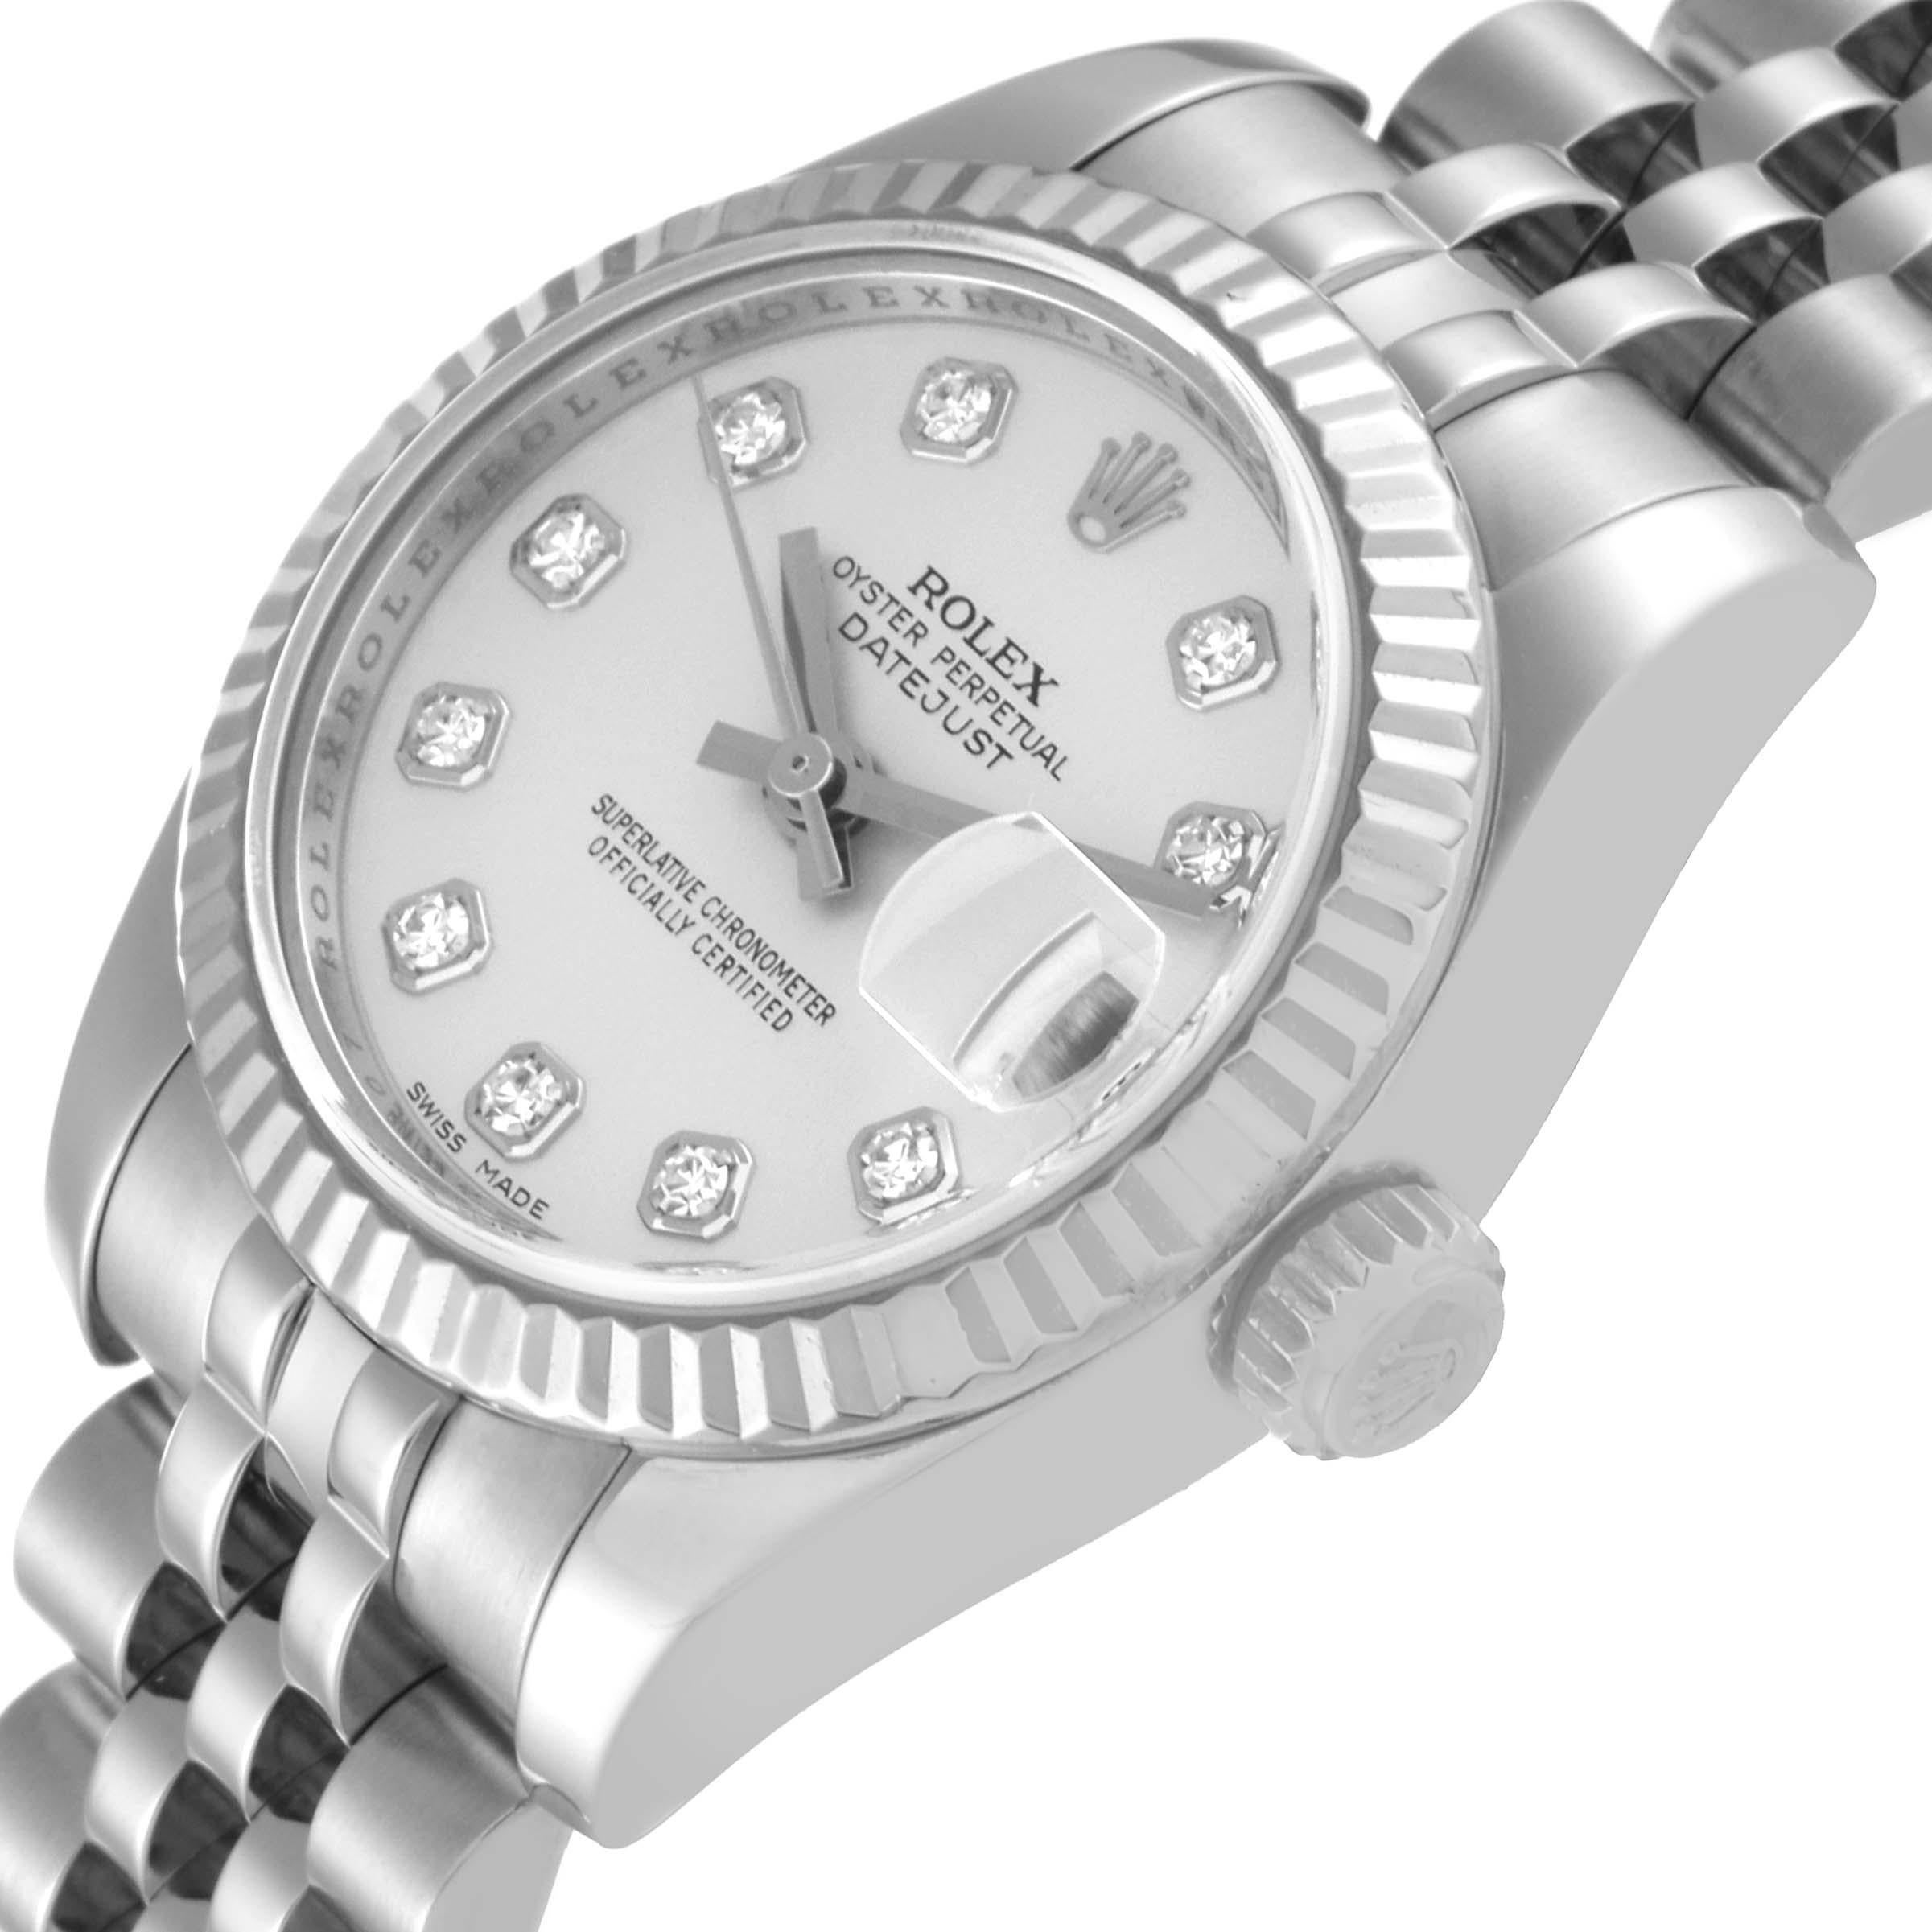 Rolex Datejust Steel White Gold Diamond Dial Ladies Watch 179174 1